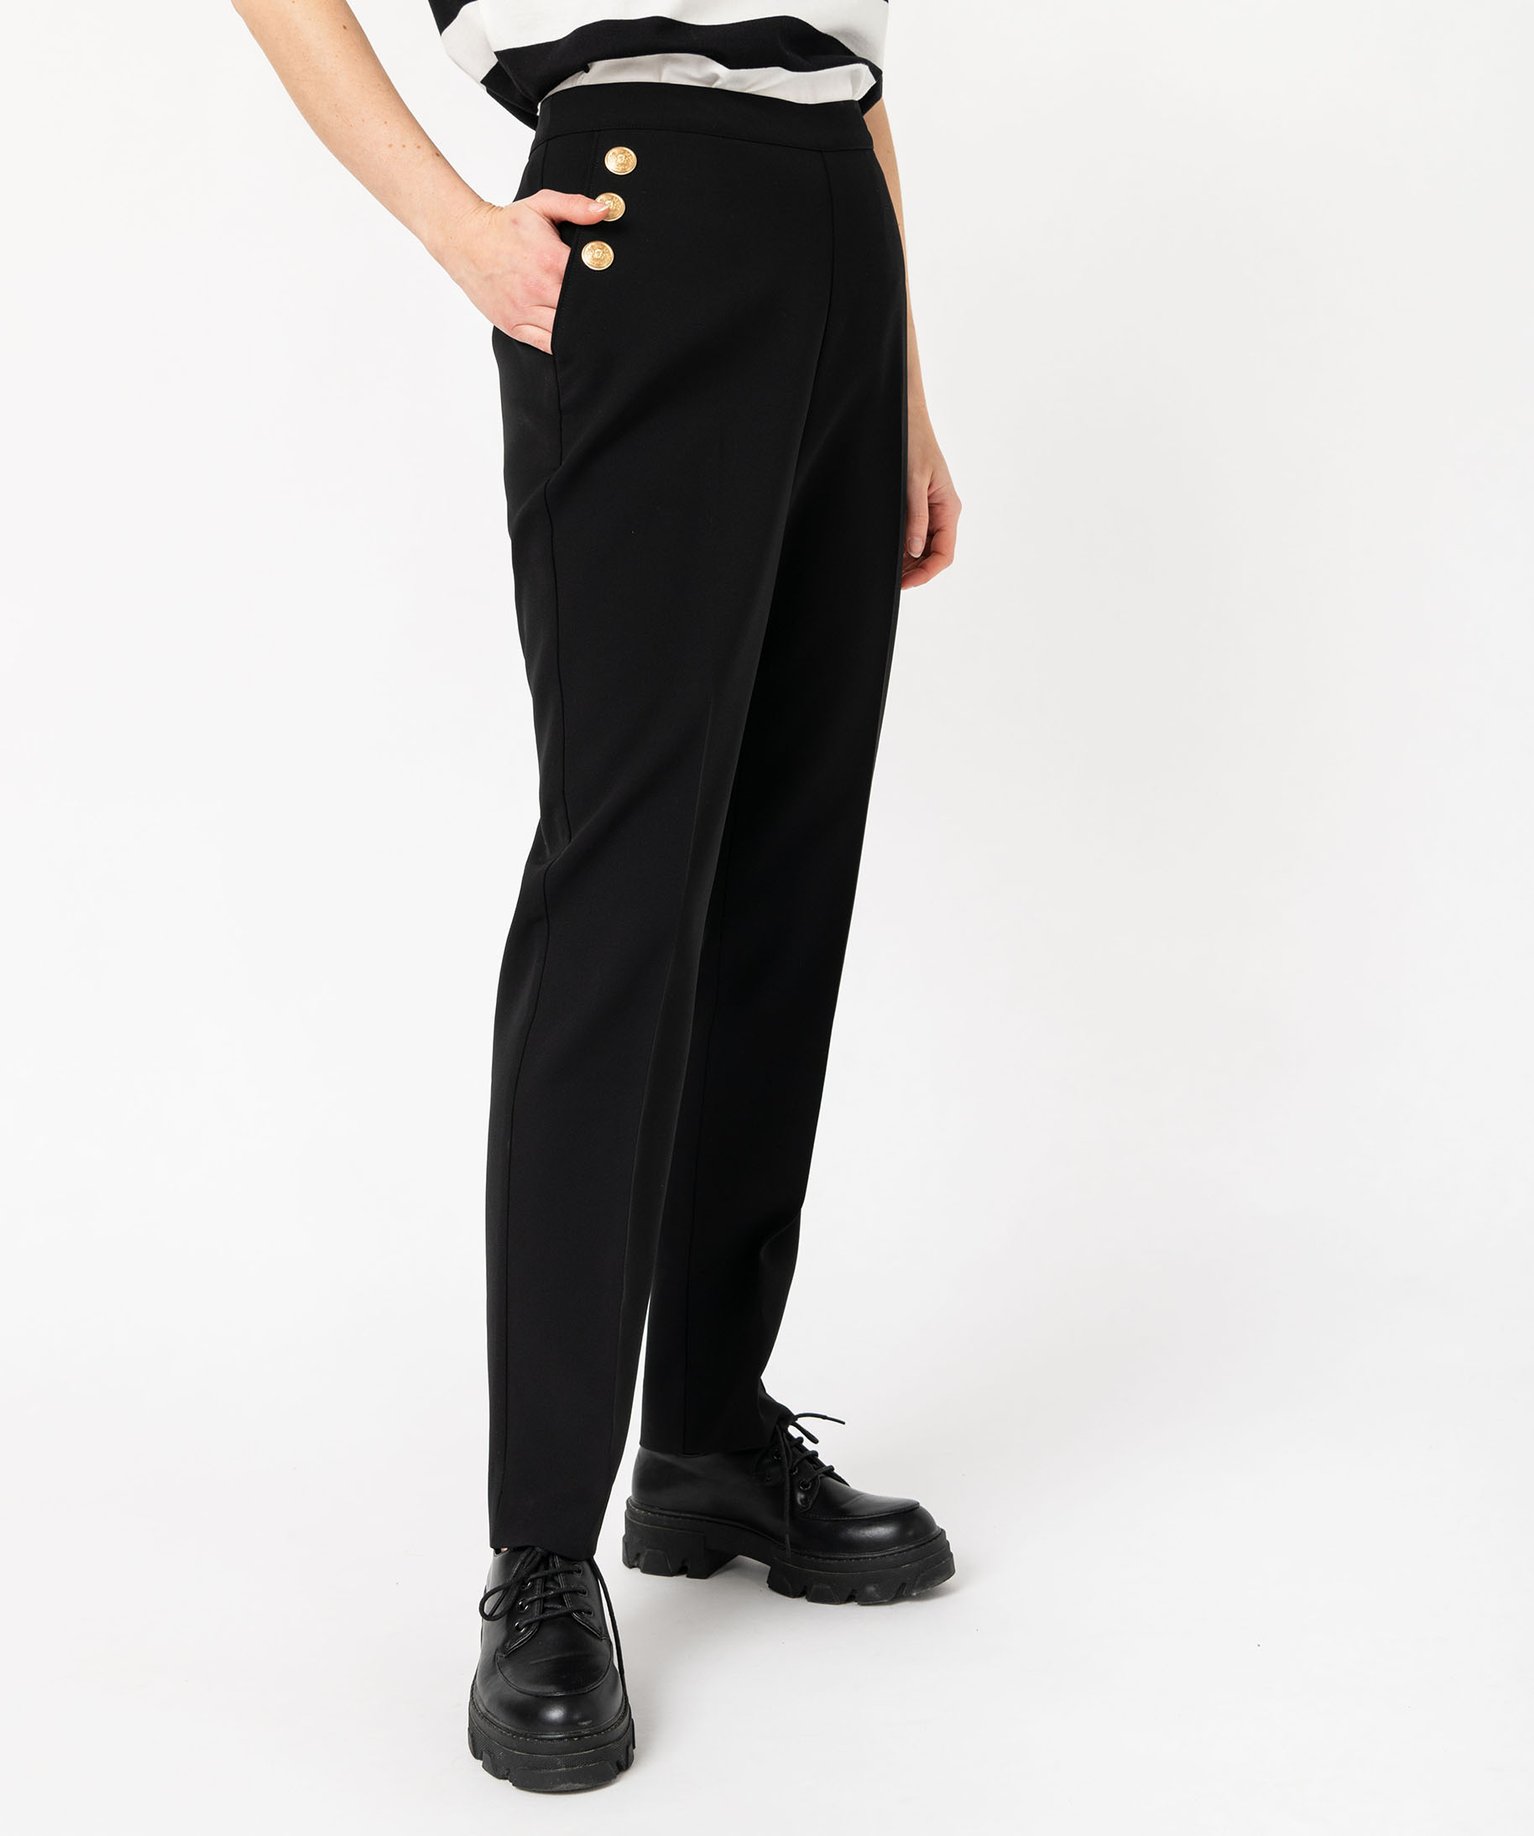 pantalon avec boutons sur les hanches femme noir pantalons